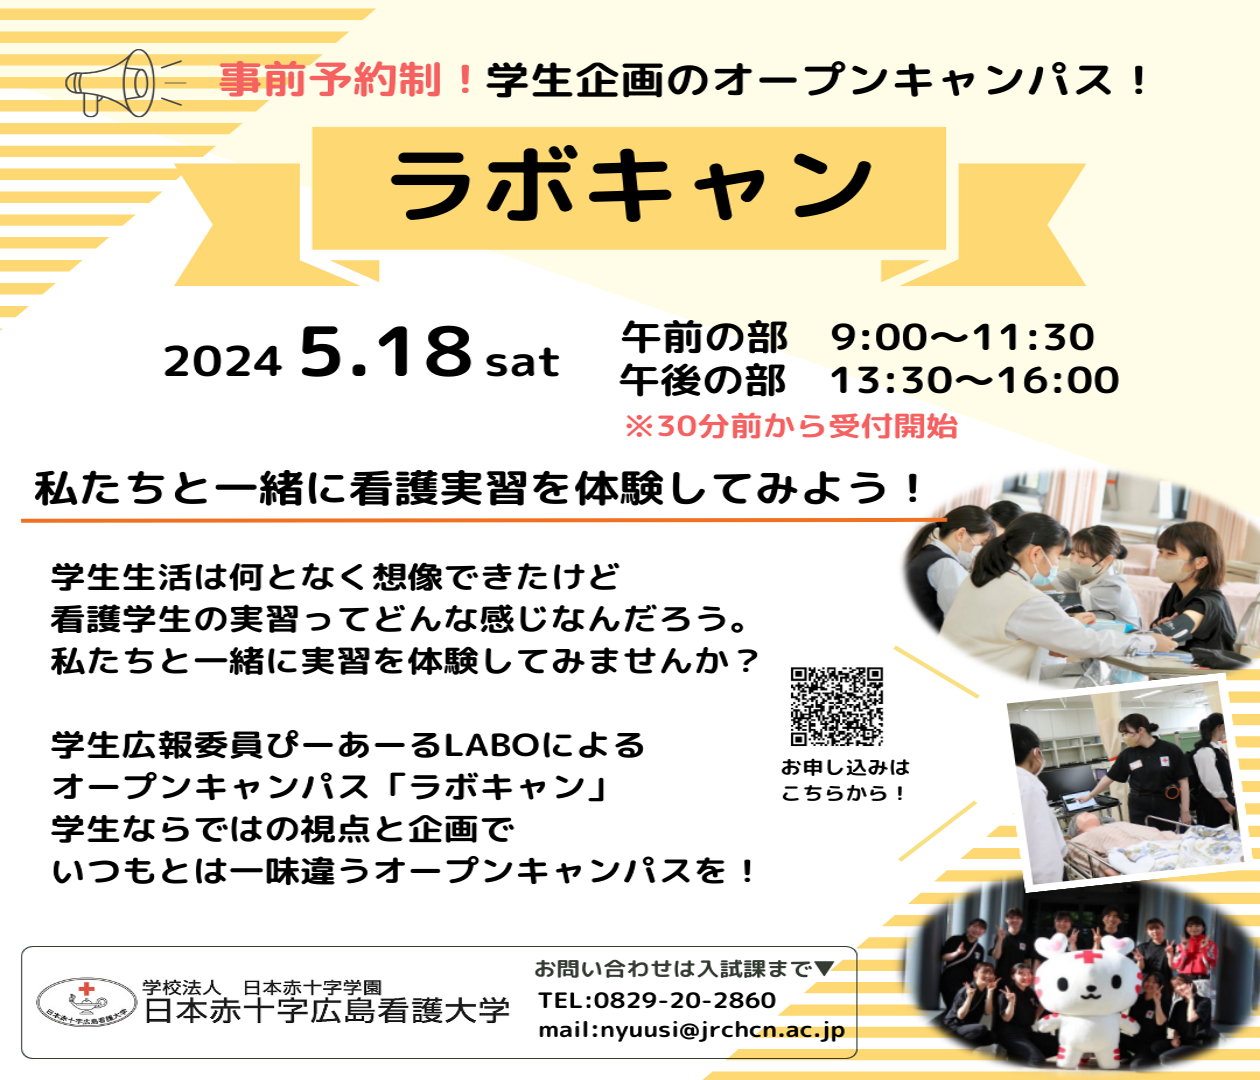 日本赤十字広島看護大学の第1回オープンキャンパス（学生企画のオープンキャンパスです！）